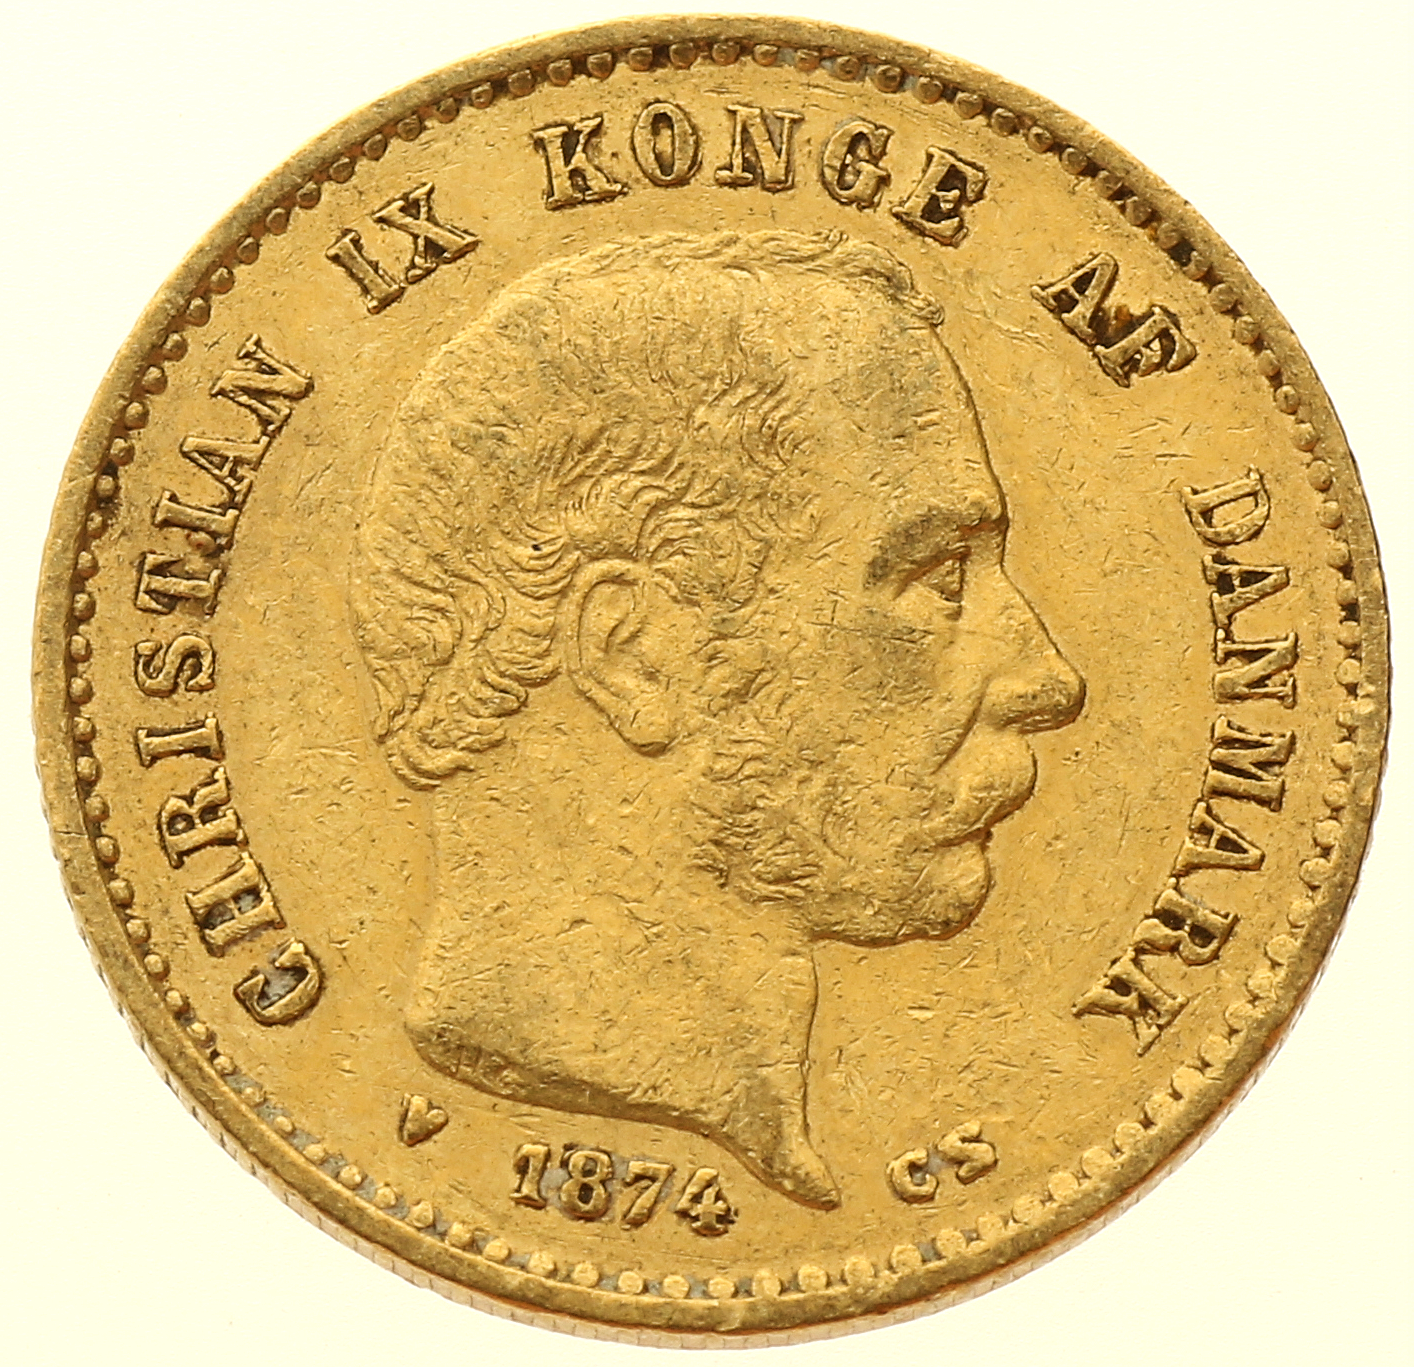 Denmark - 10 kroner - 1874 - Christian IX